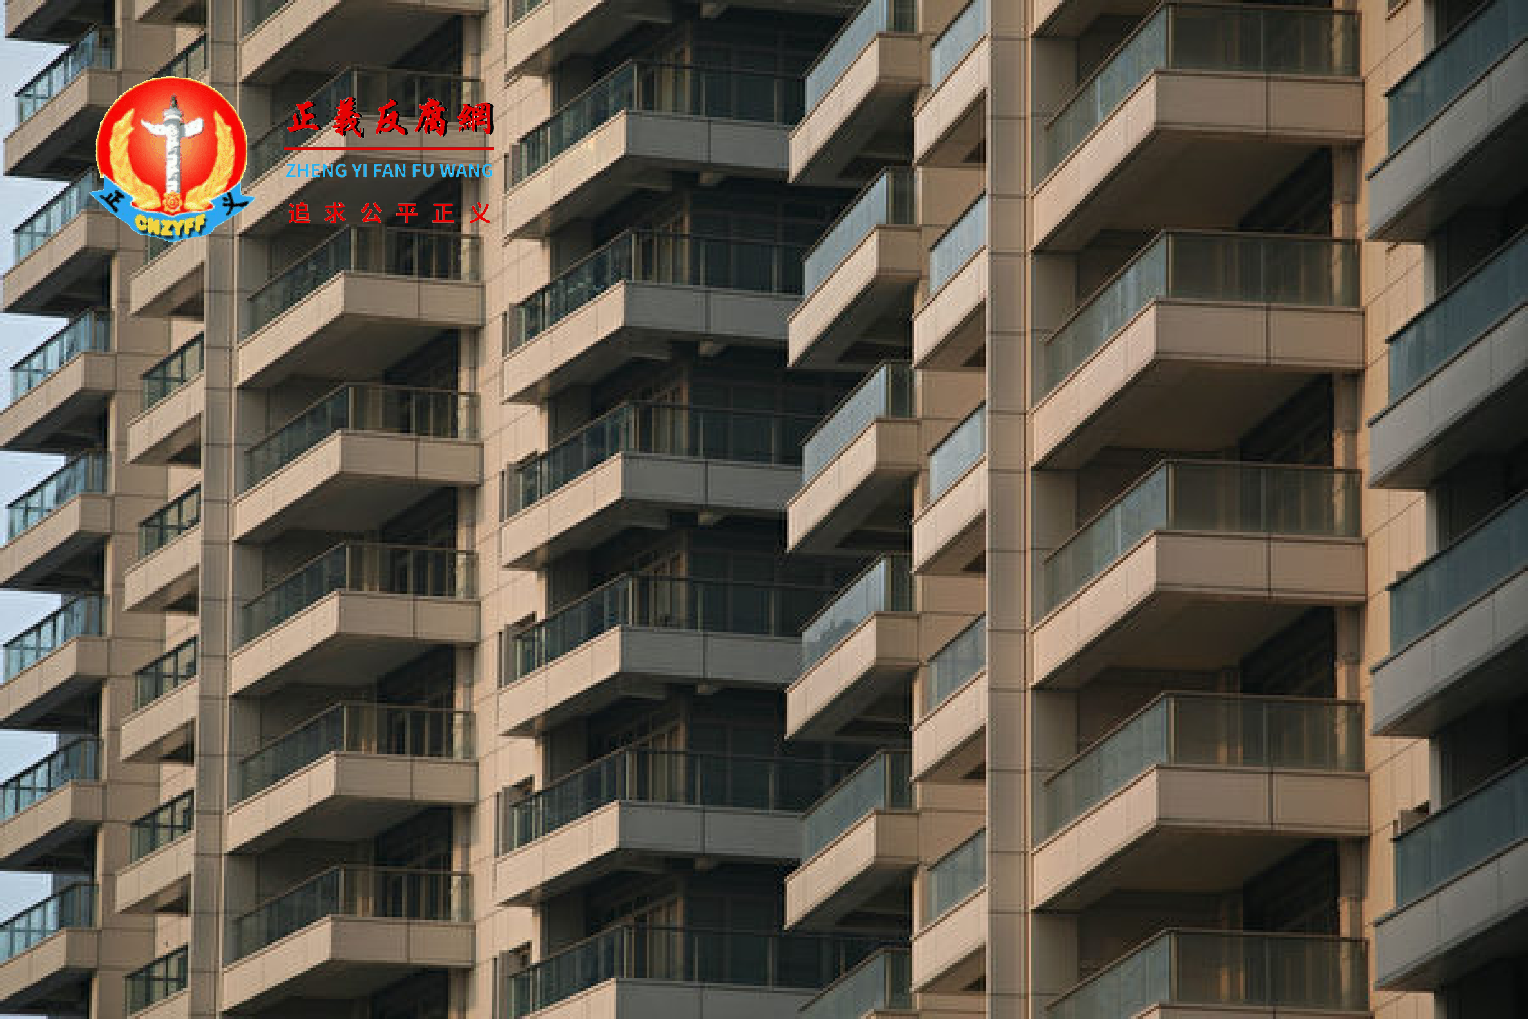 当前中国小区业主与物业公司的矛盾日益普遍。图为上海市一栋公寓大楼。.png